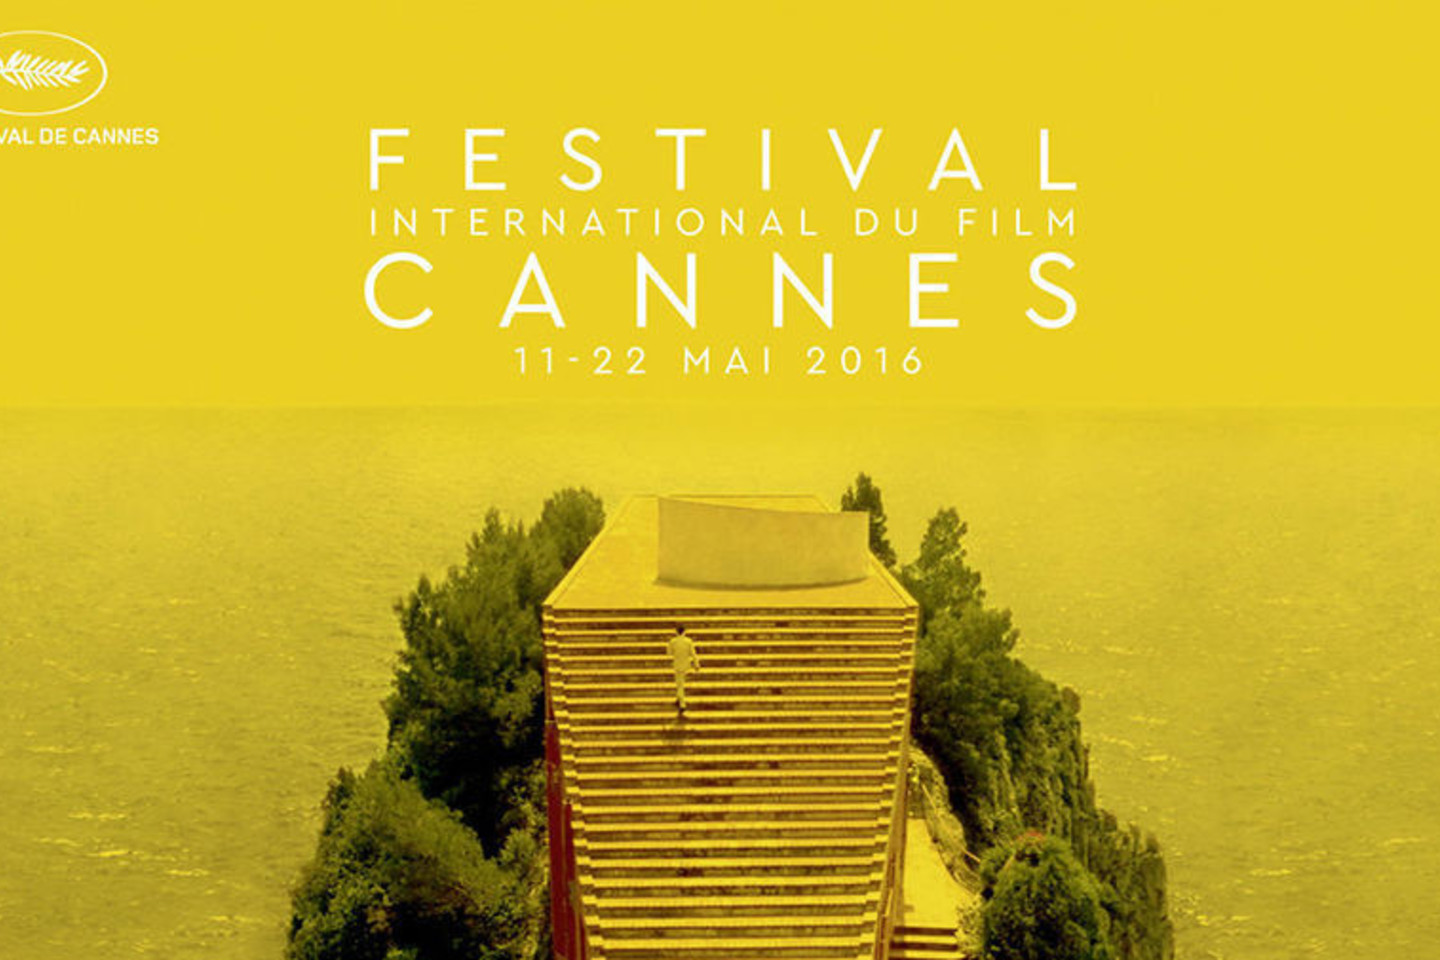 Kanų kino festivalis truks nuo gegužės 11 iki 22 d.